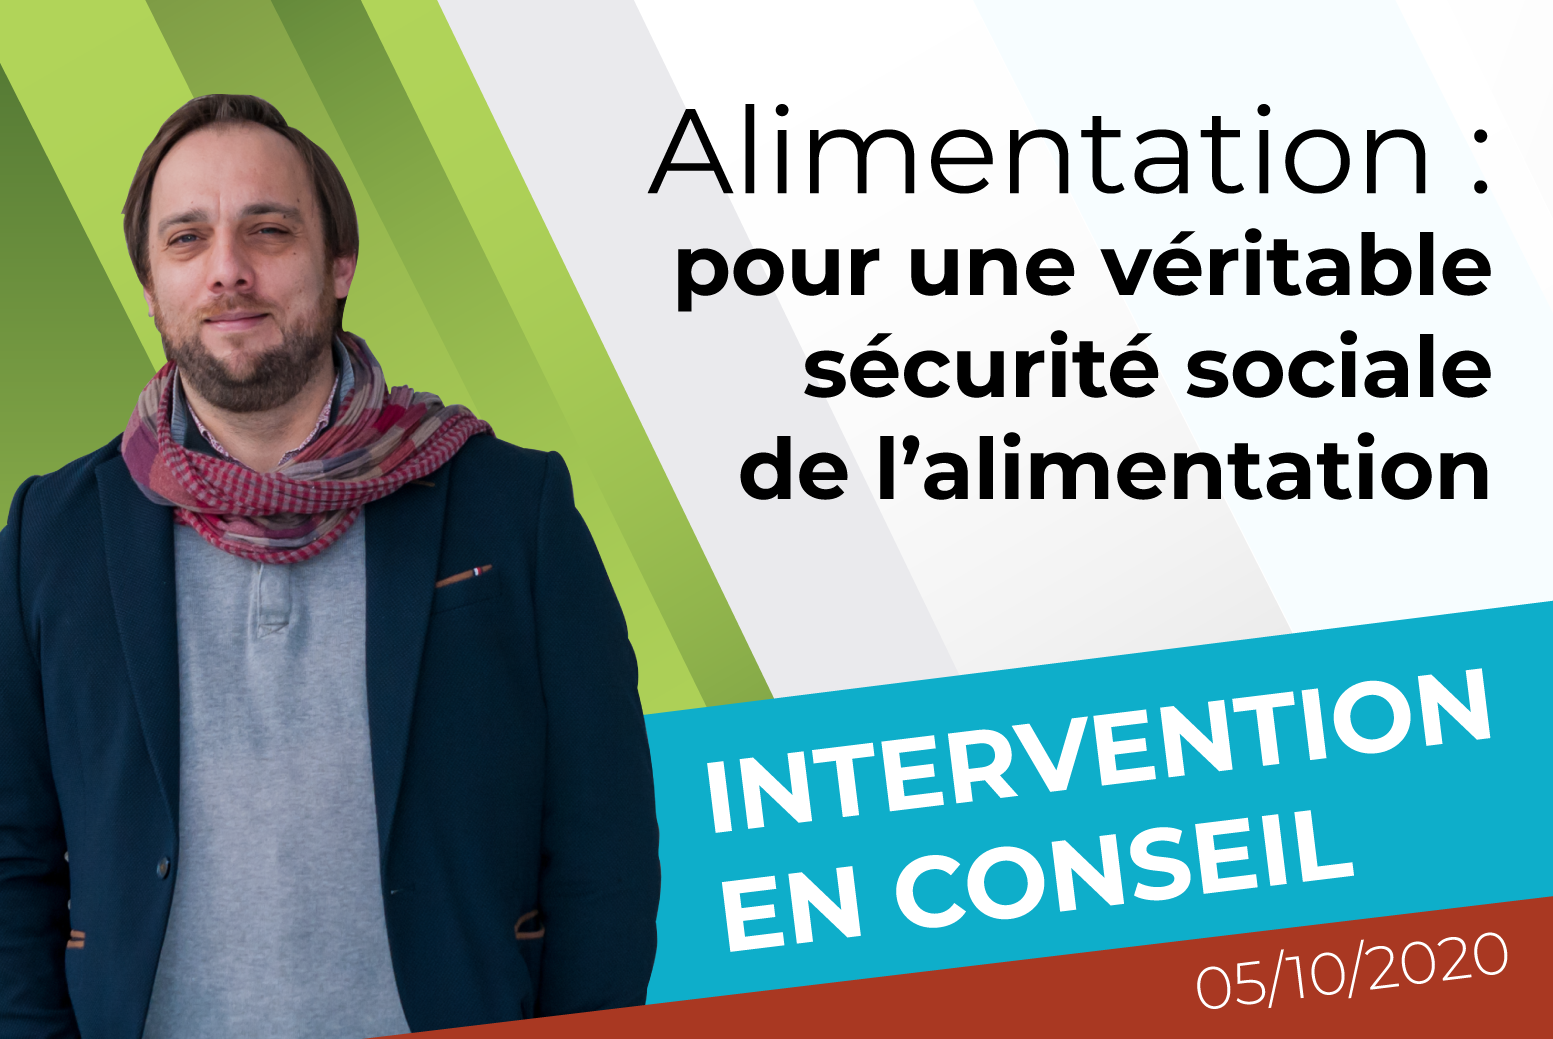 Intervention sur les questions d'alimentation par Florestan Groult, élu du groupe « Métropole insoumise, résiliente et solidaire », lors du conseil de la métropole de Lyon du 5 octobre 2020.